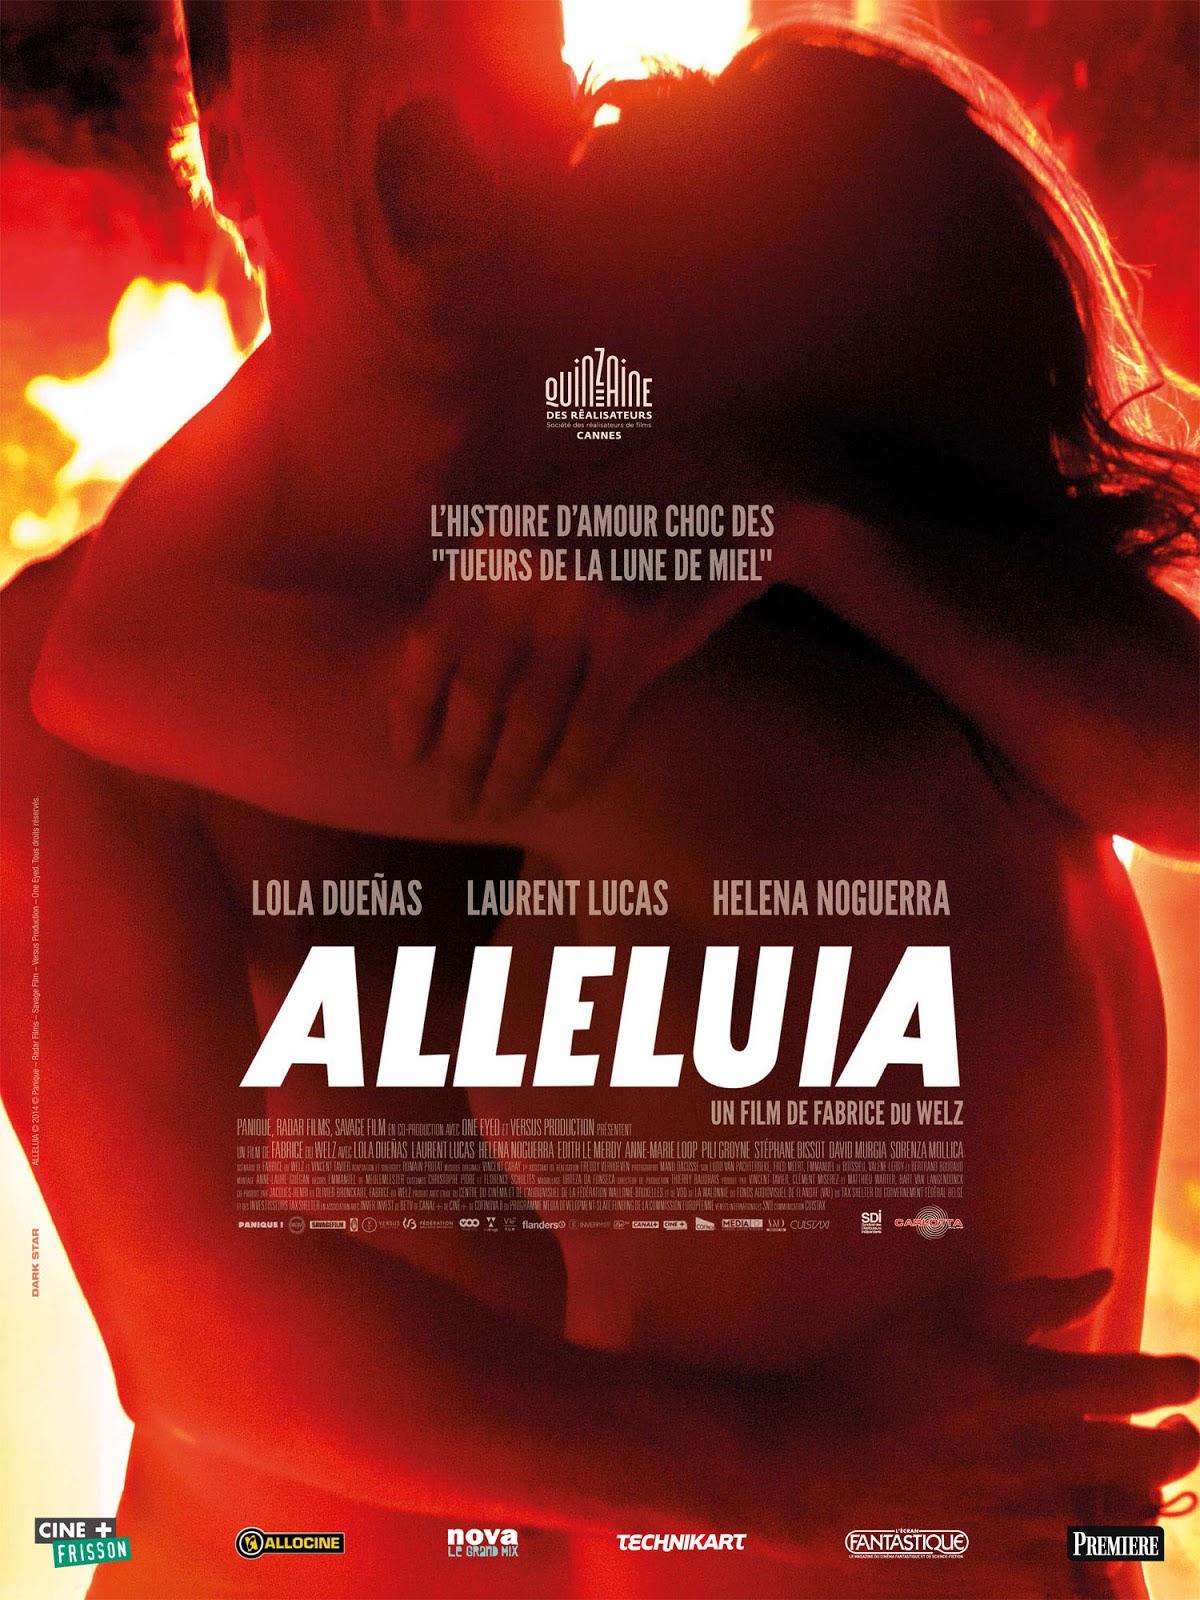 CINEMA: Alléluia (2014), amour fou / Alleluia (2014), crazy love